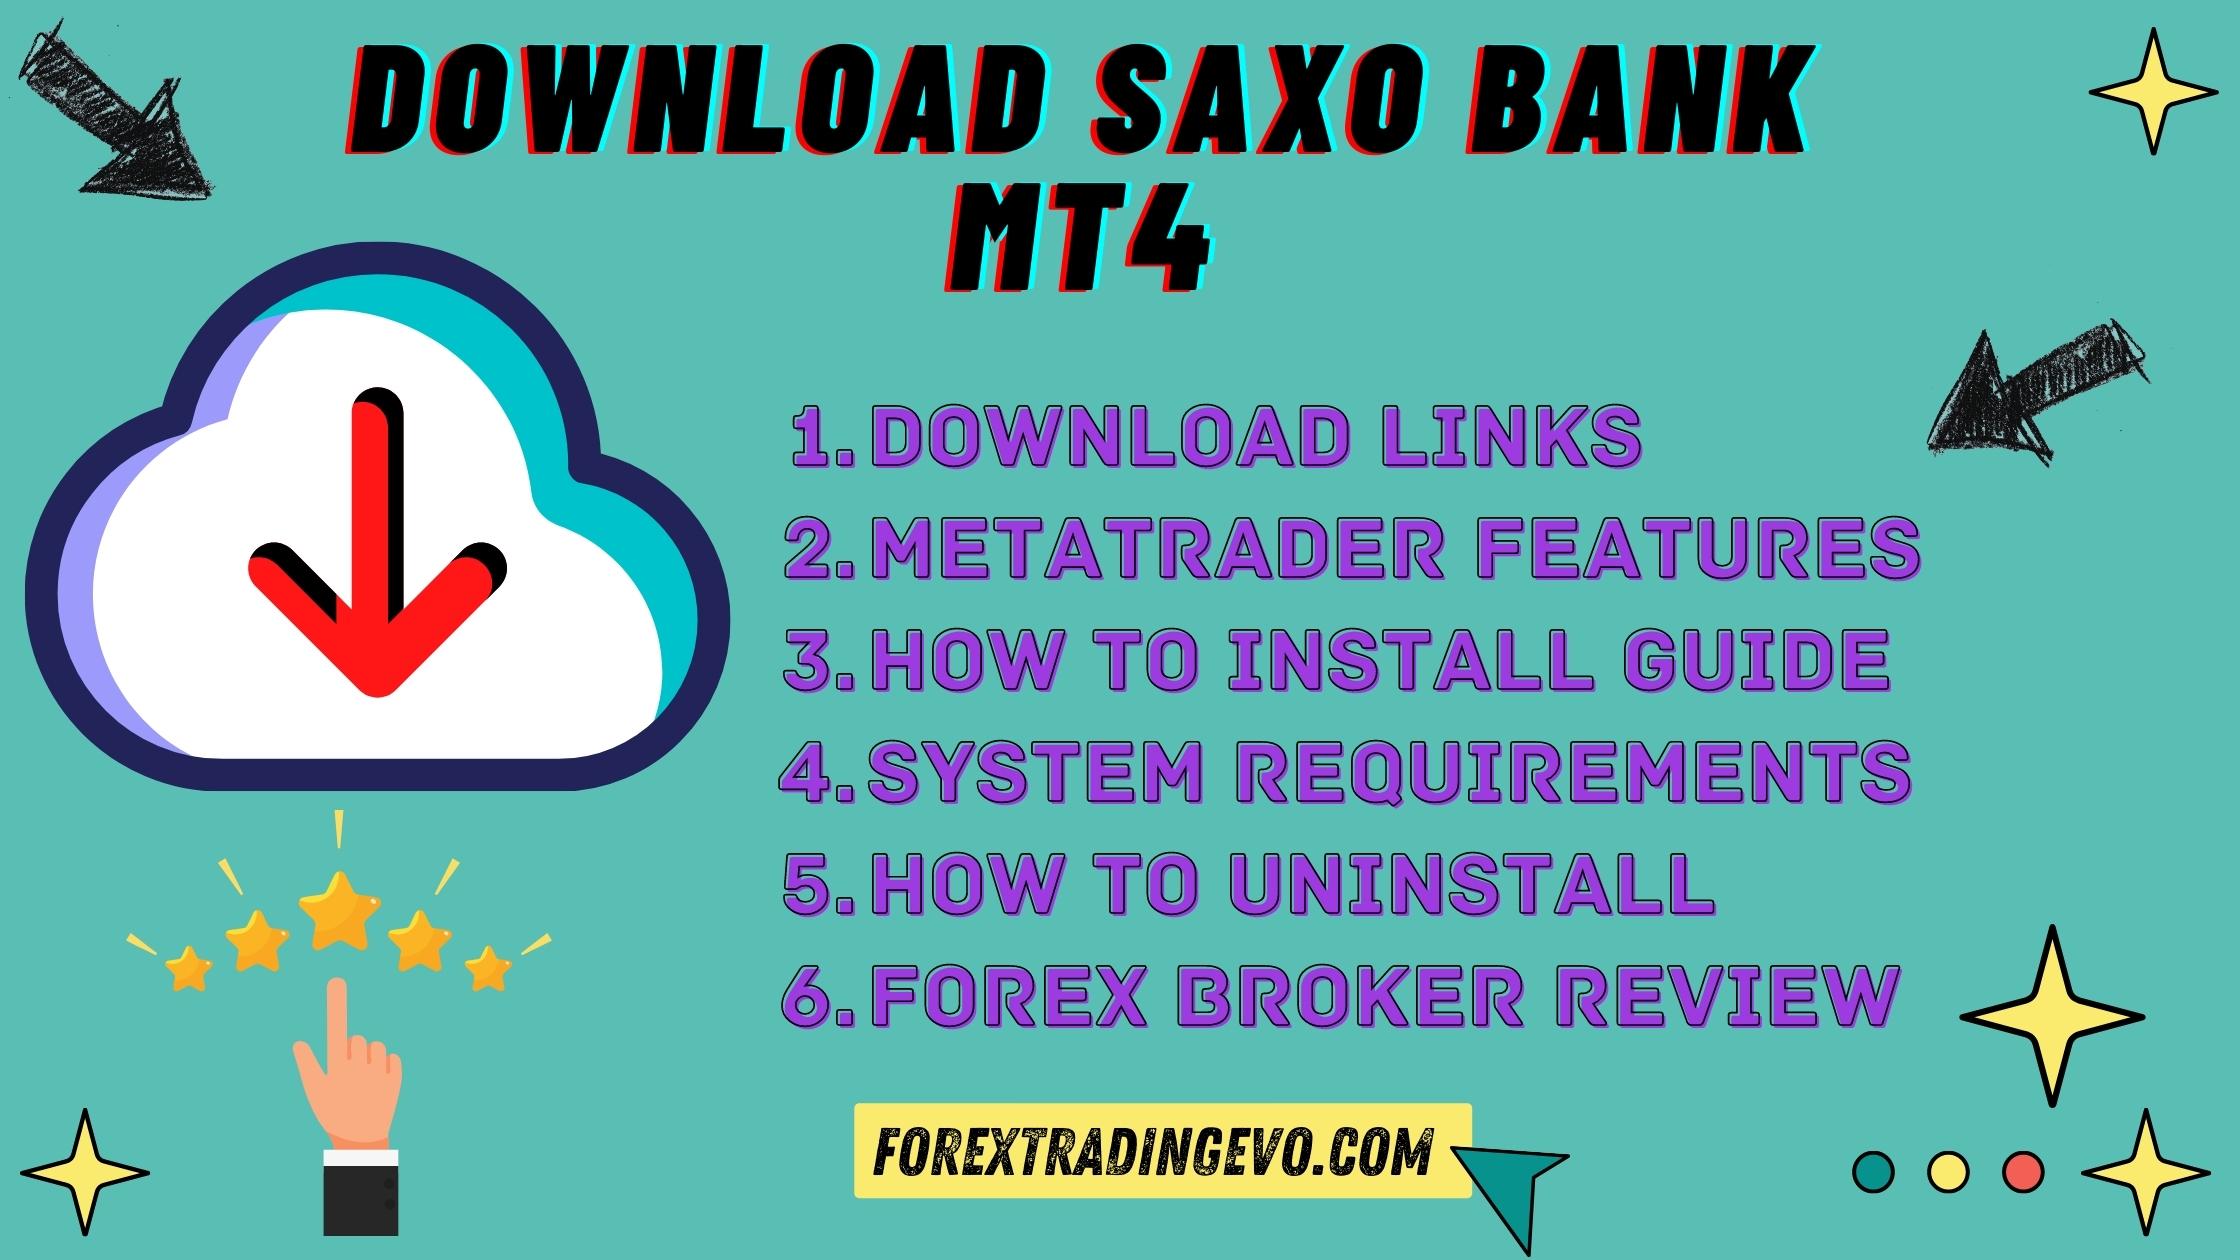 Saxo Bank Mt4